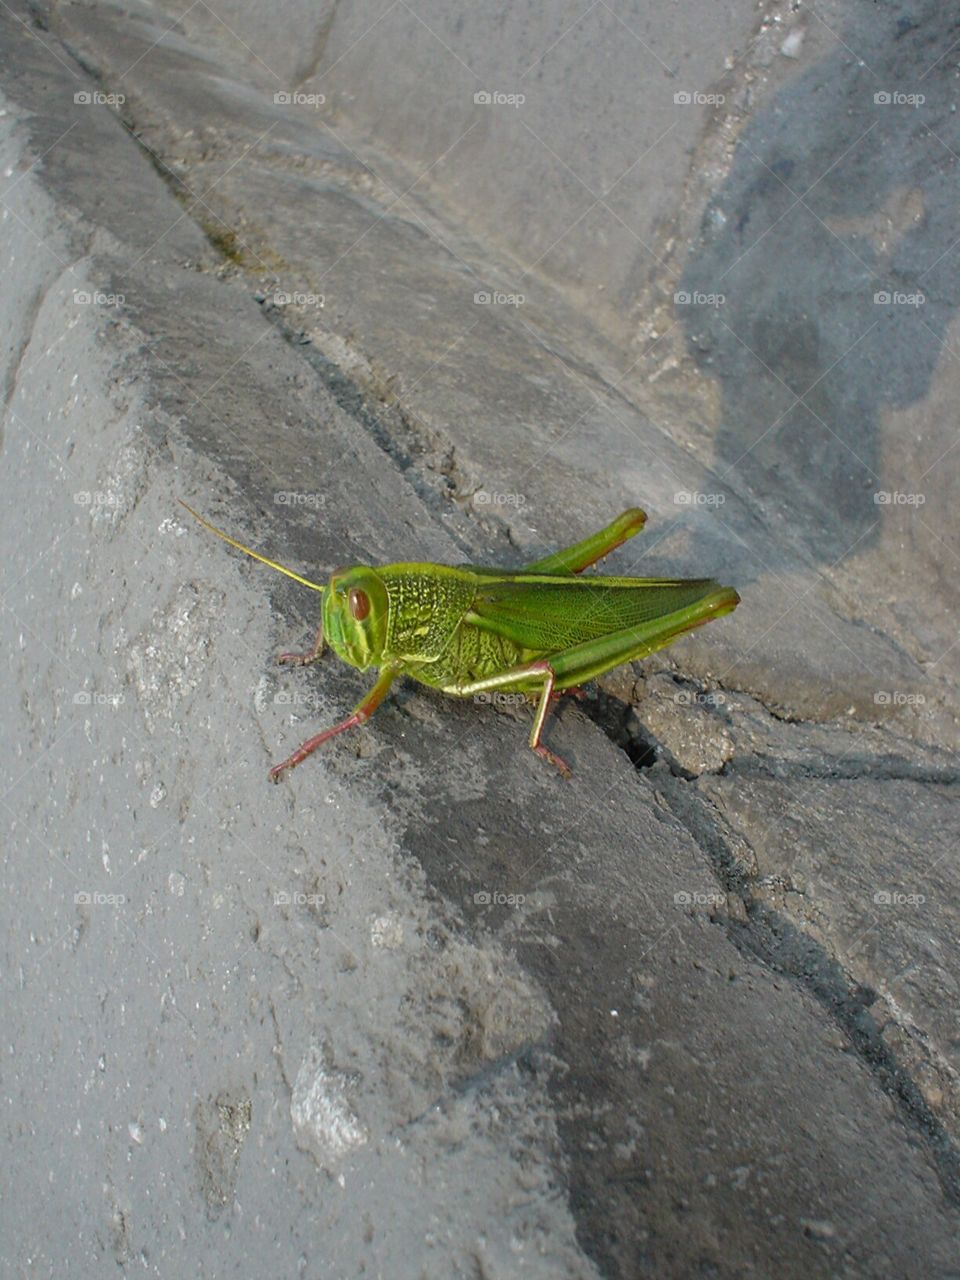 Grasshopper in China